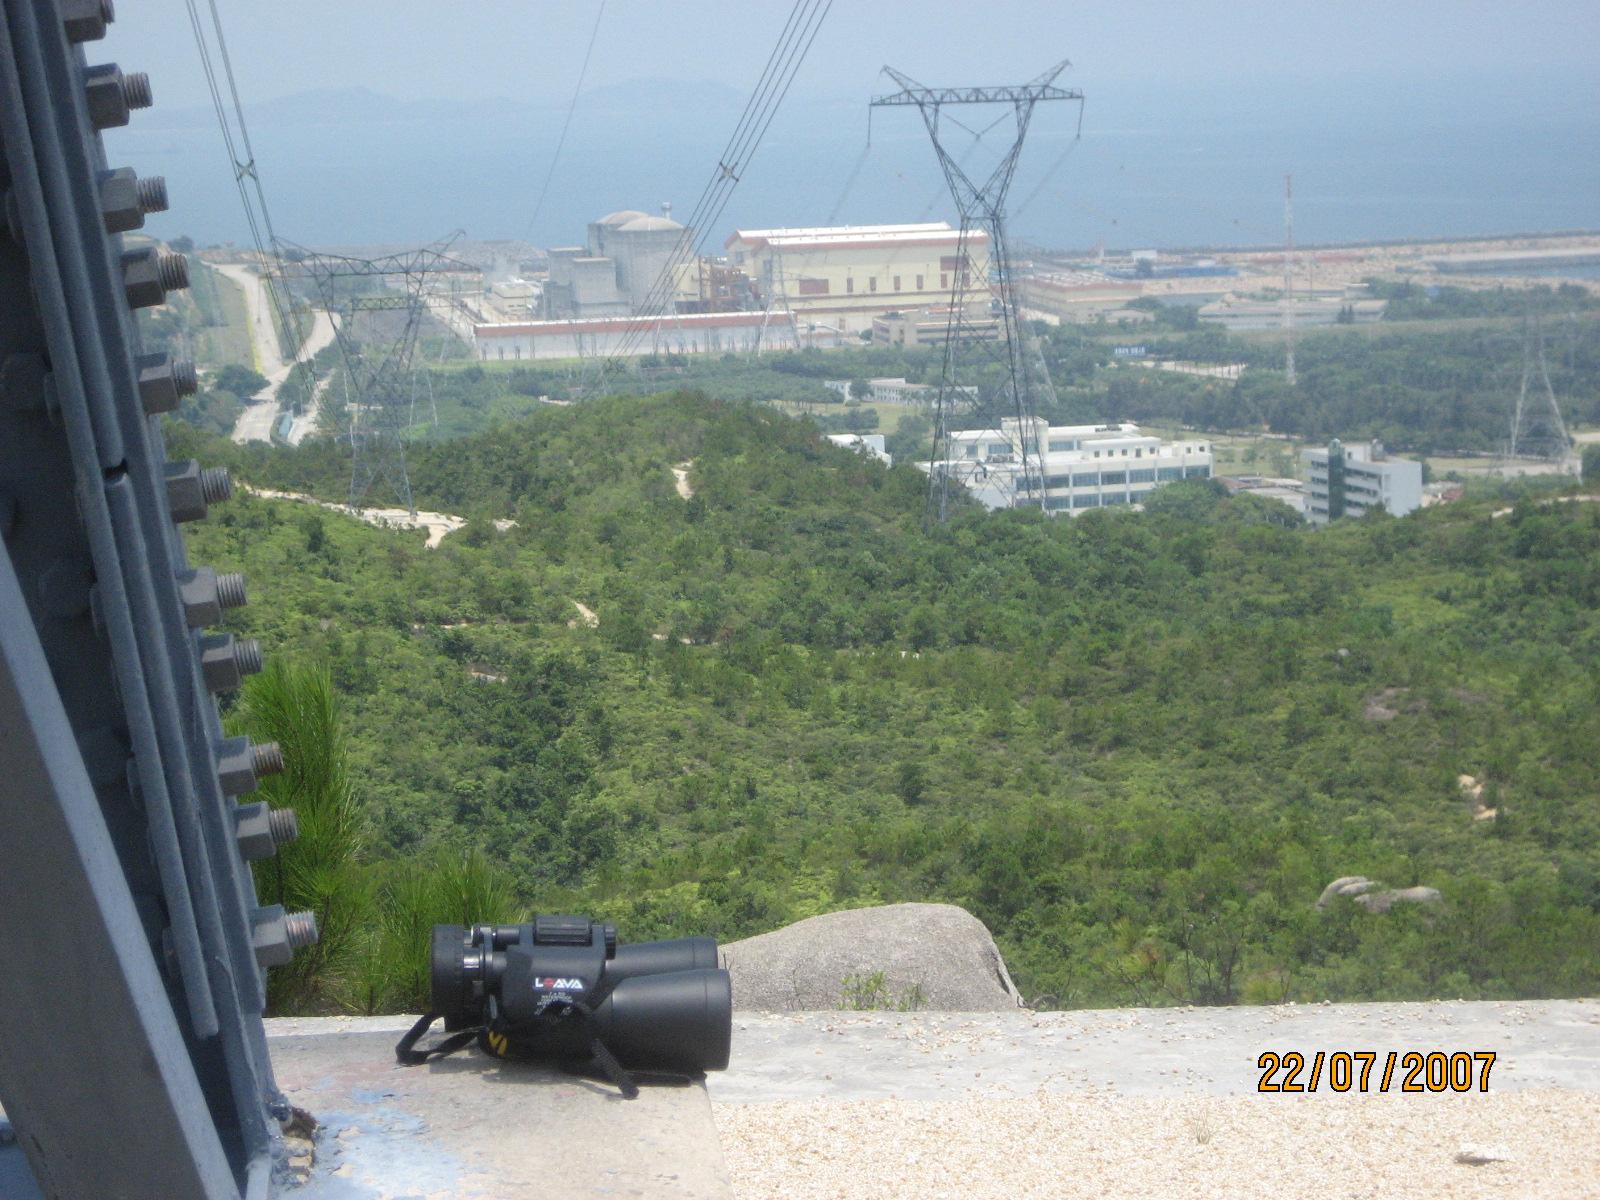 核电站远景1.JPG